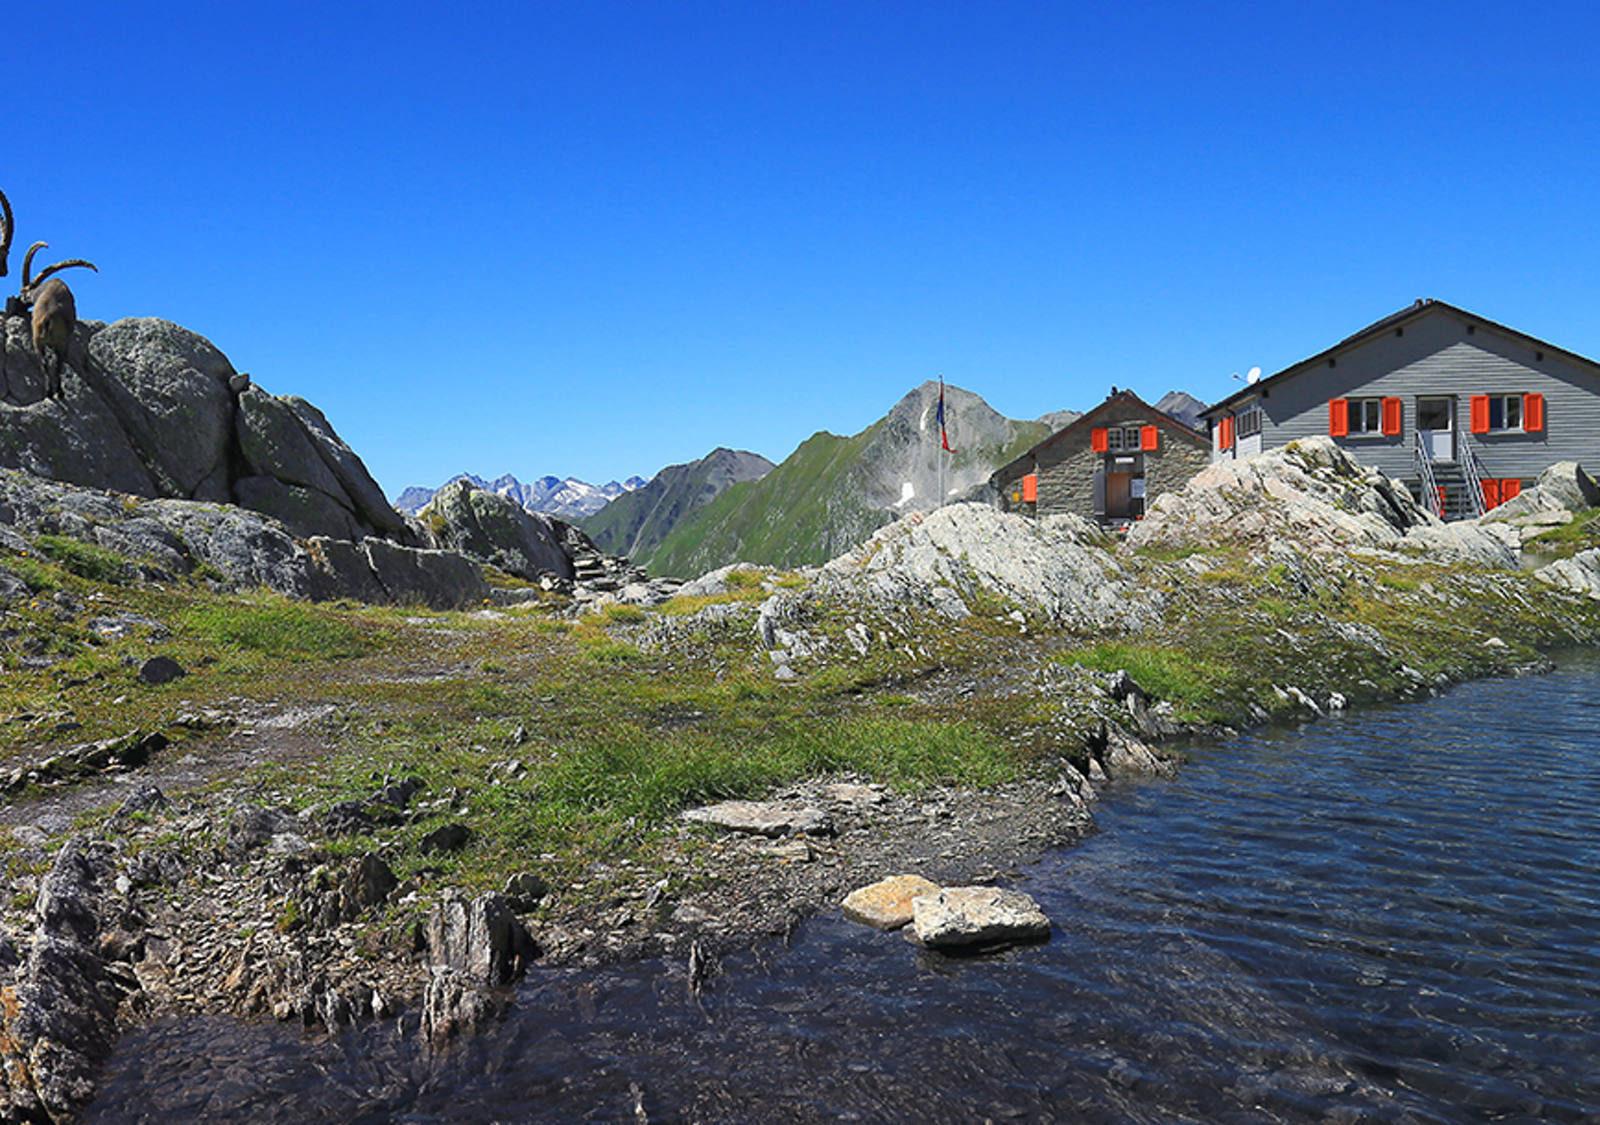 Idée rando en Suisse: Cadlimo et son lac alpin